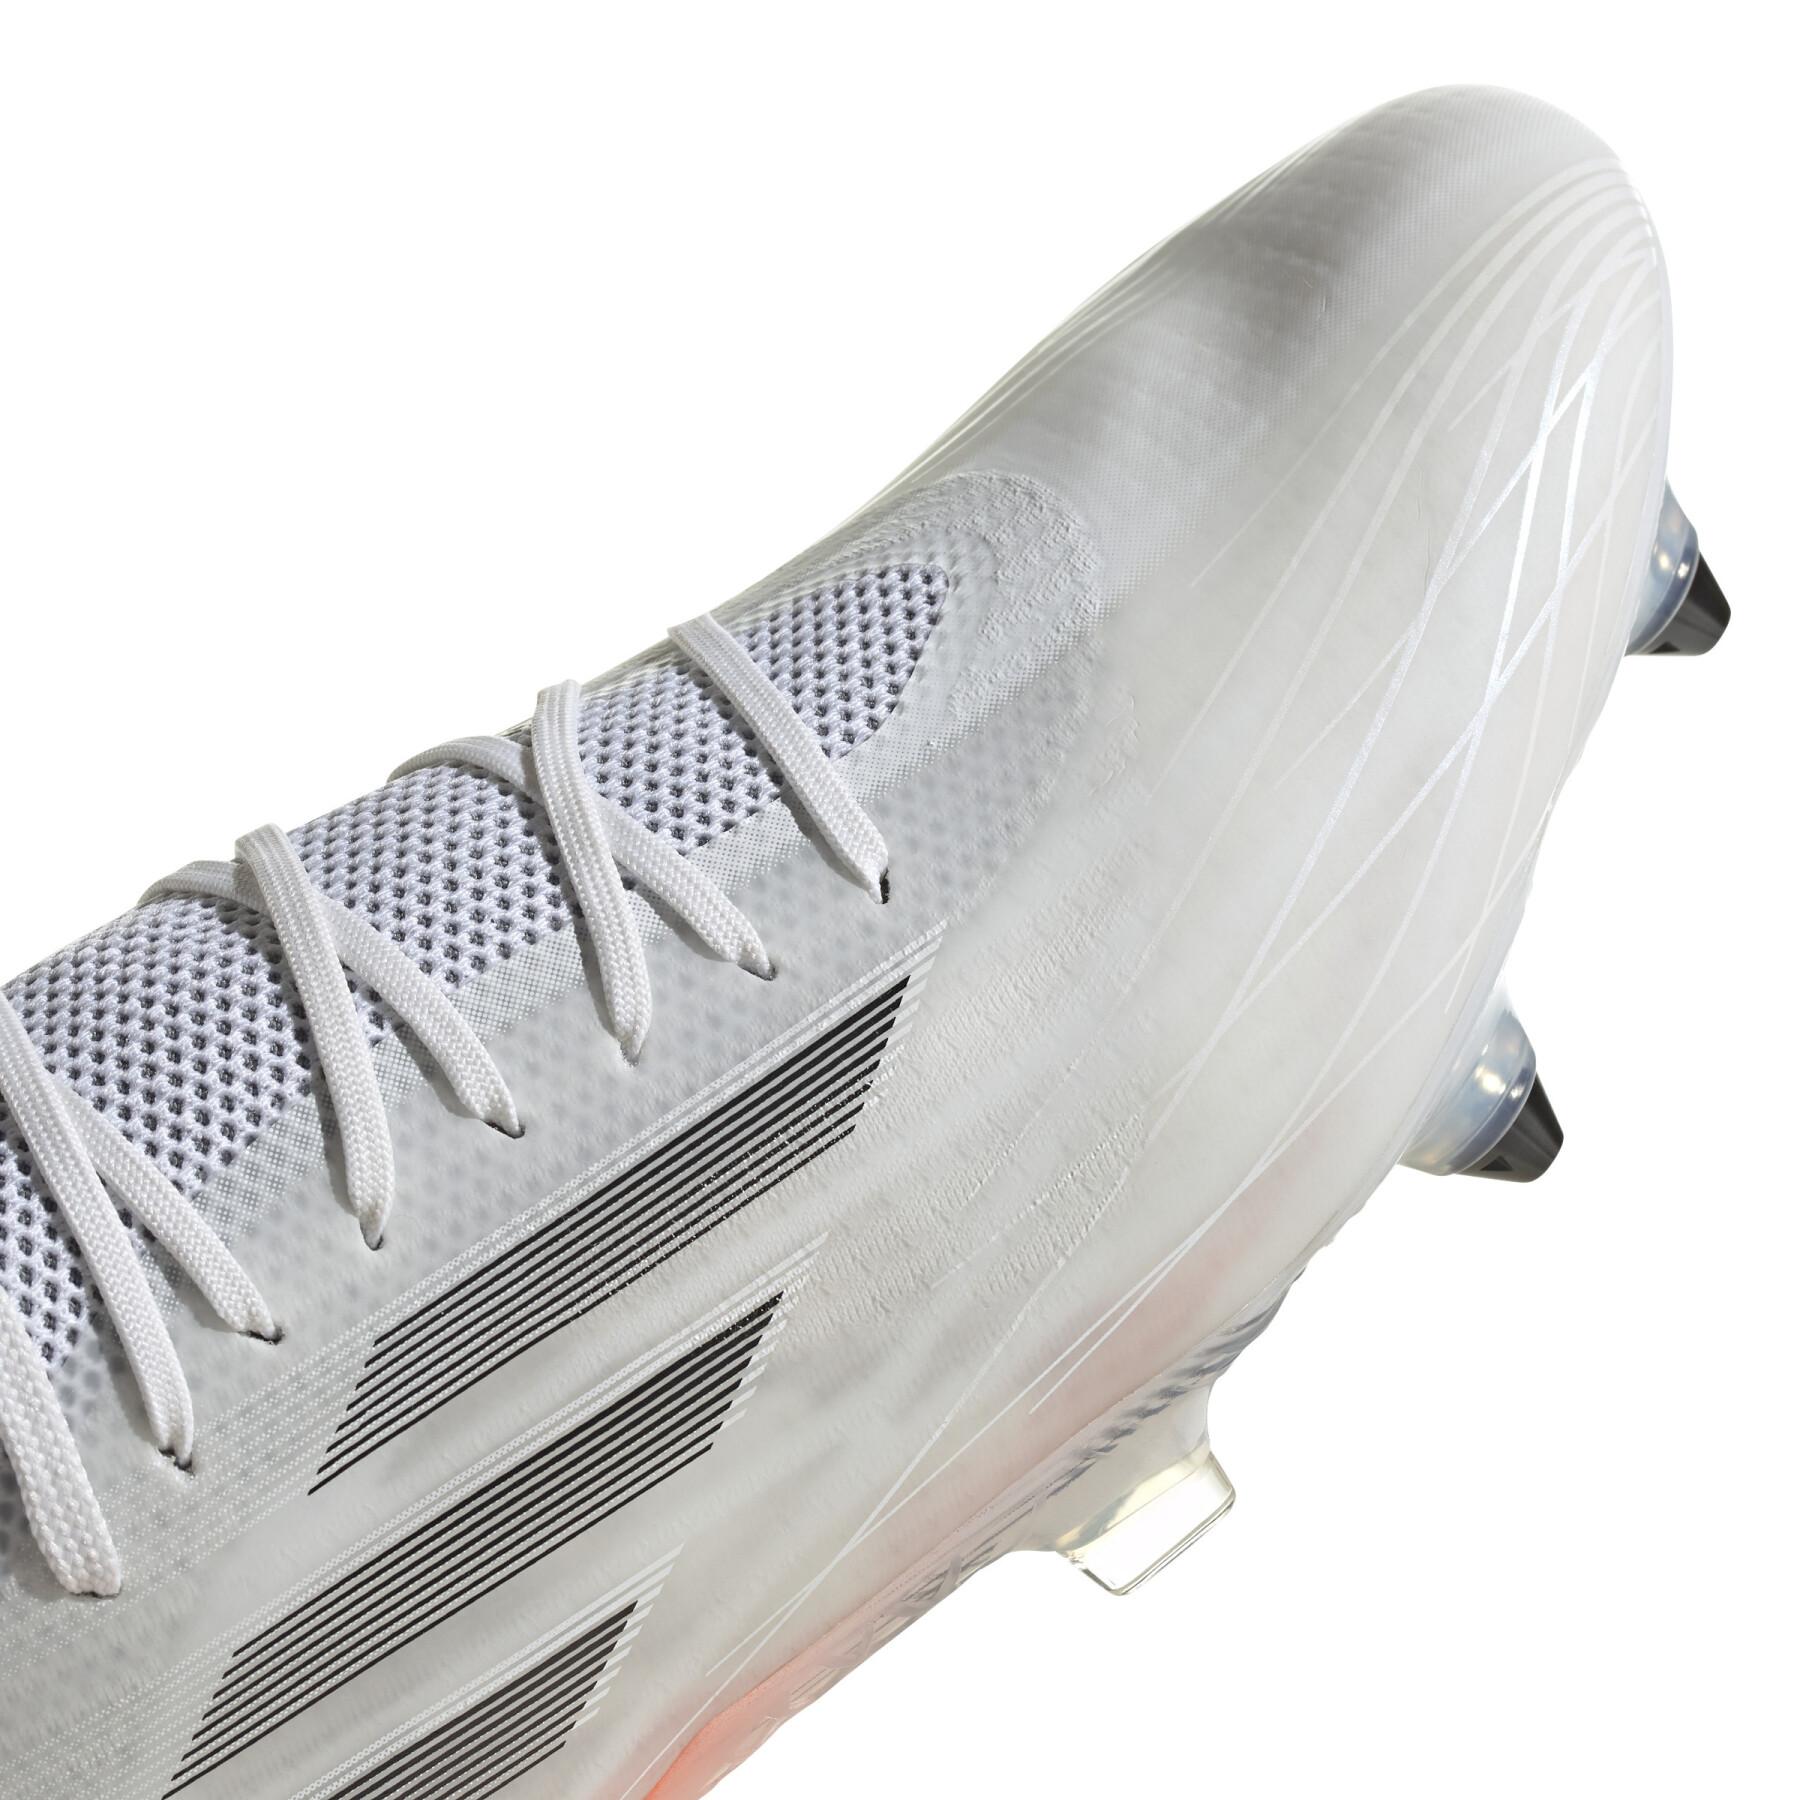 Scarpe da calcio adidas X Speedflow 1 SG - Whitespark